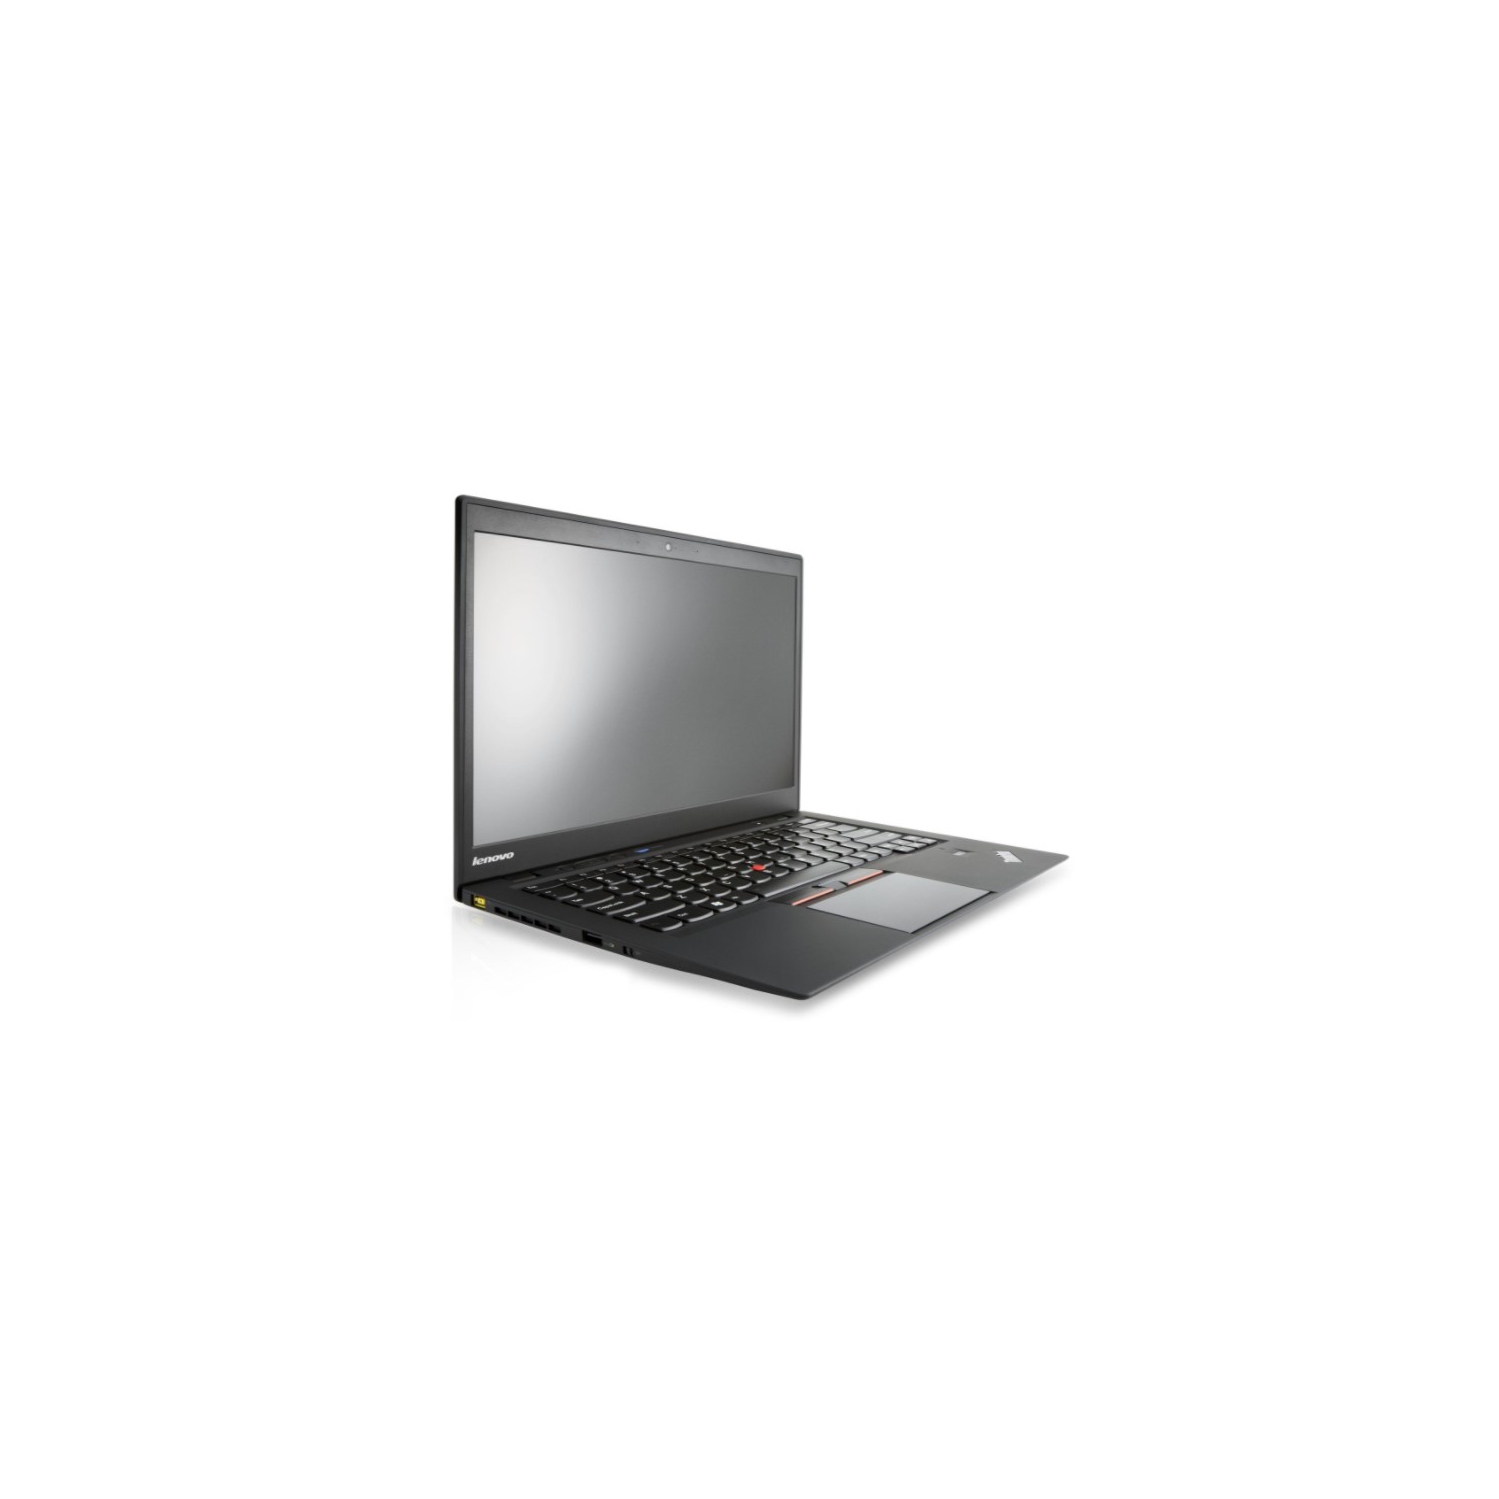 Refurbished (Good) - Lenovo ThinkPad X1 Carbon 14" Full HD Laptop - Intel Core i7-5600U - 8GB RAM - 256GB SSD - Windows 10 Pro